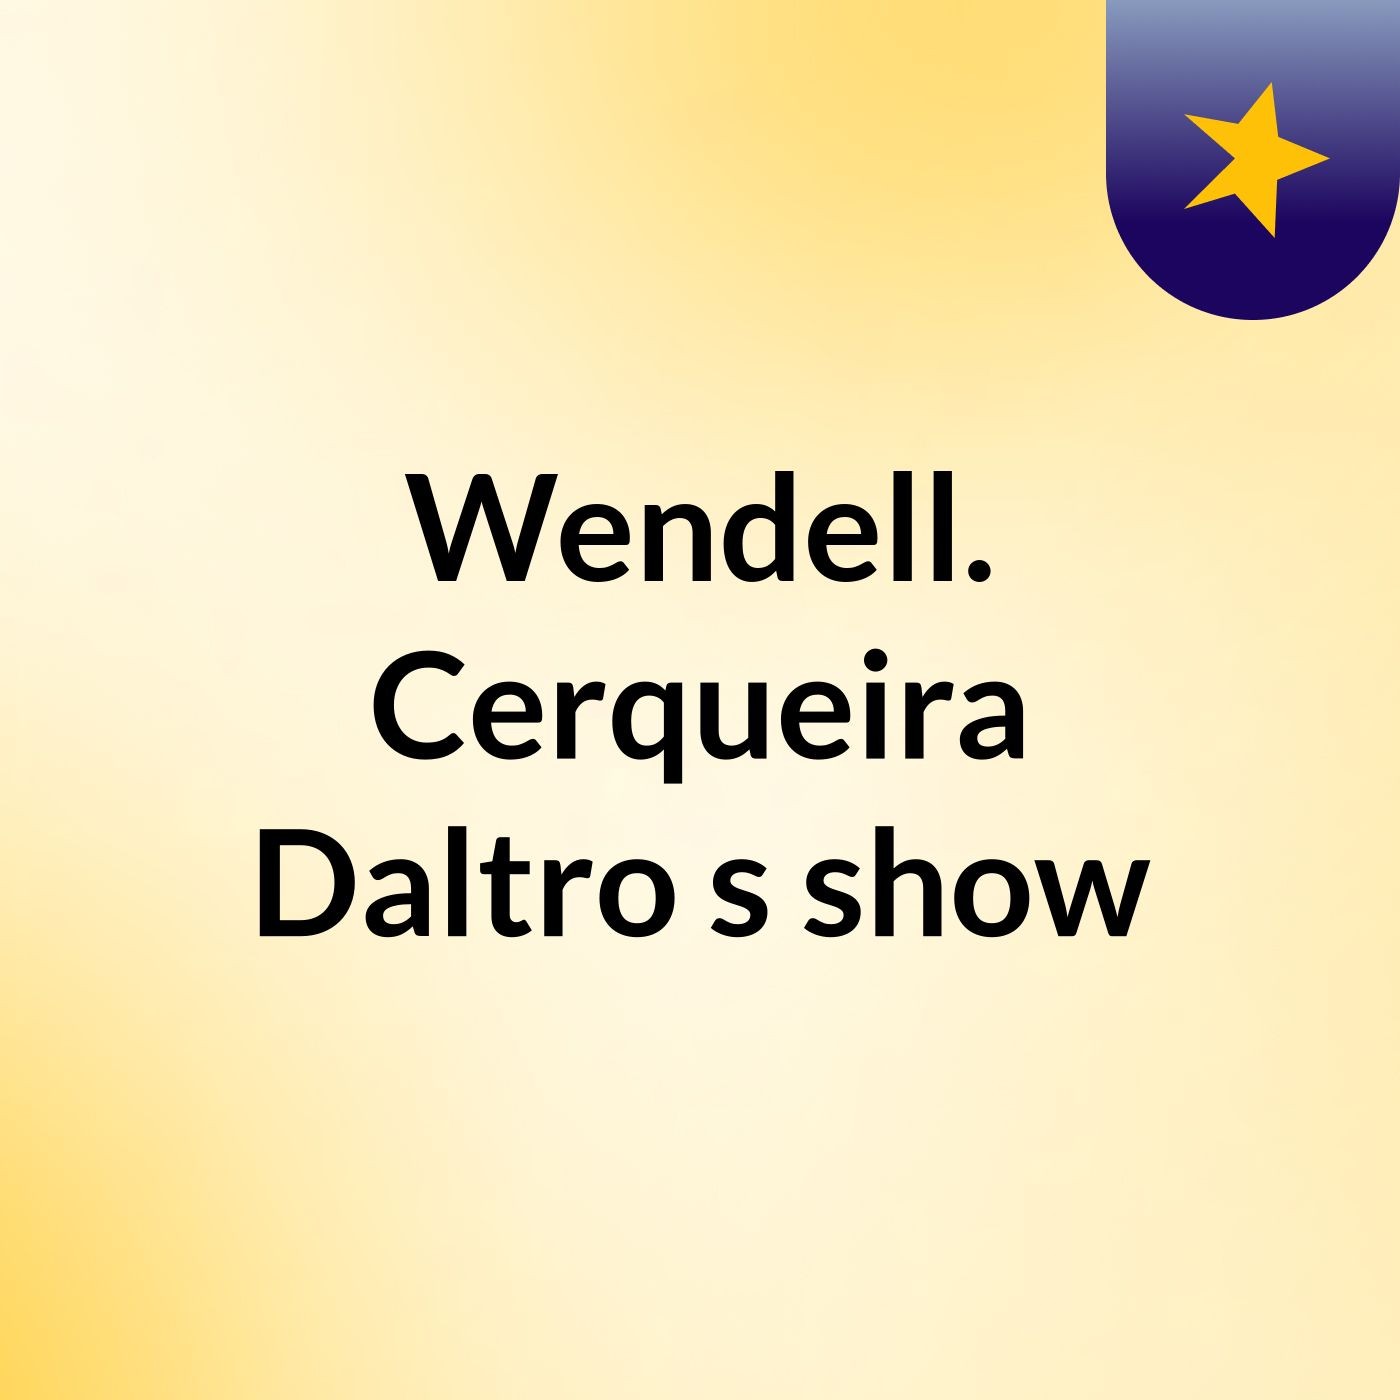 Wendell. Cerqueira Daltro's show